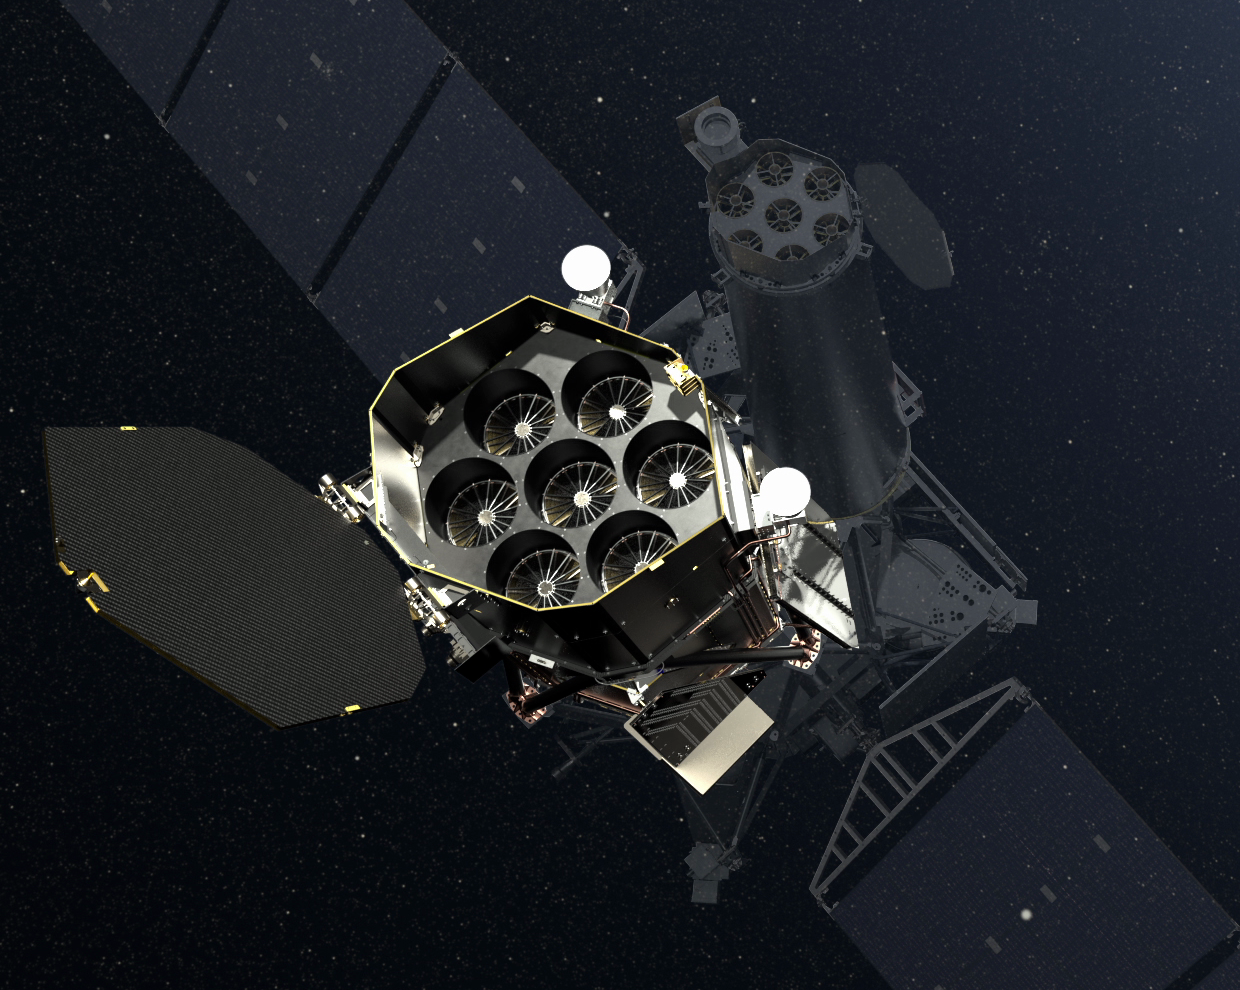 Телескопы орбитальной астрофизической обсерватории "Спектр-РГ": eROSITA — большие зеркала слева внизу; ART-XC — меньшие зеркала справа вверху. Иллюстрация © Flickr.com / DLR German Aerospace Center